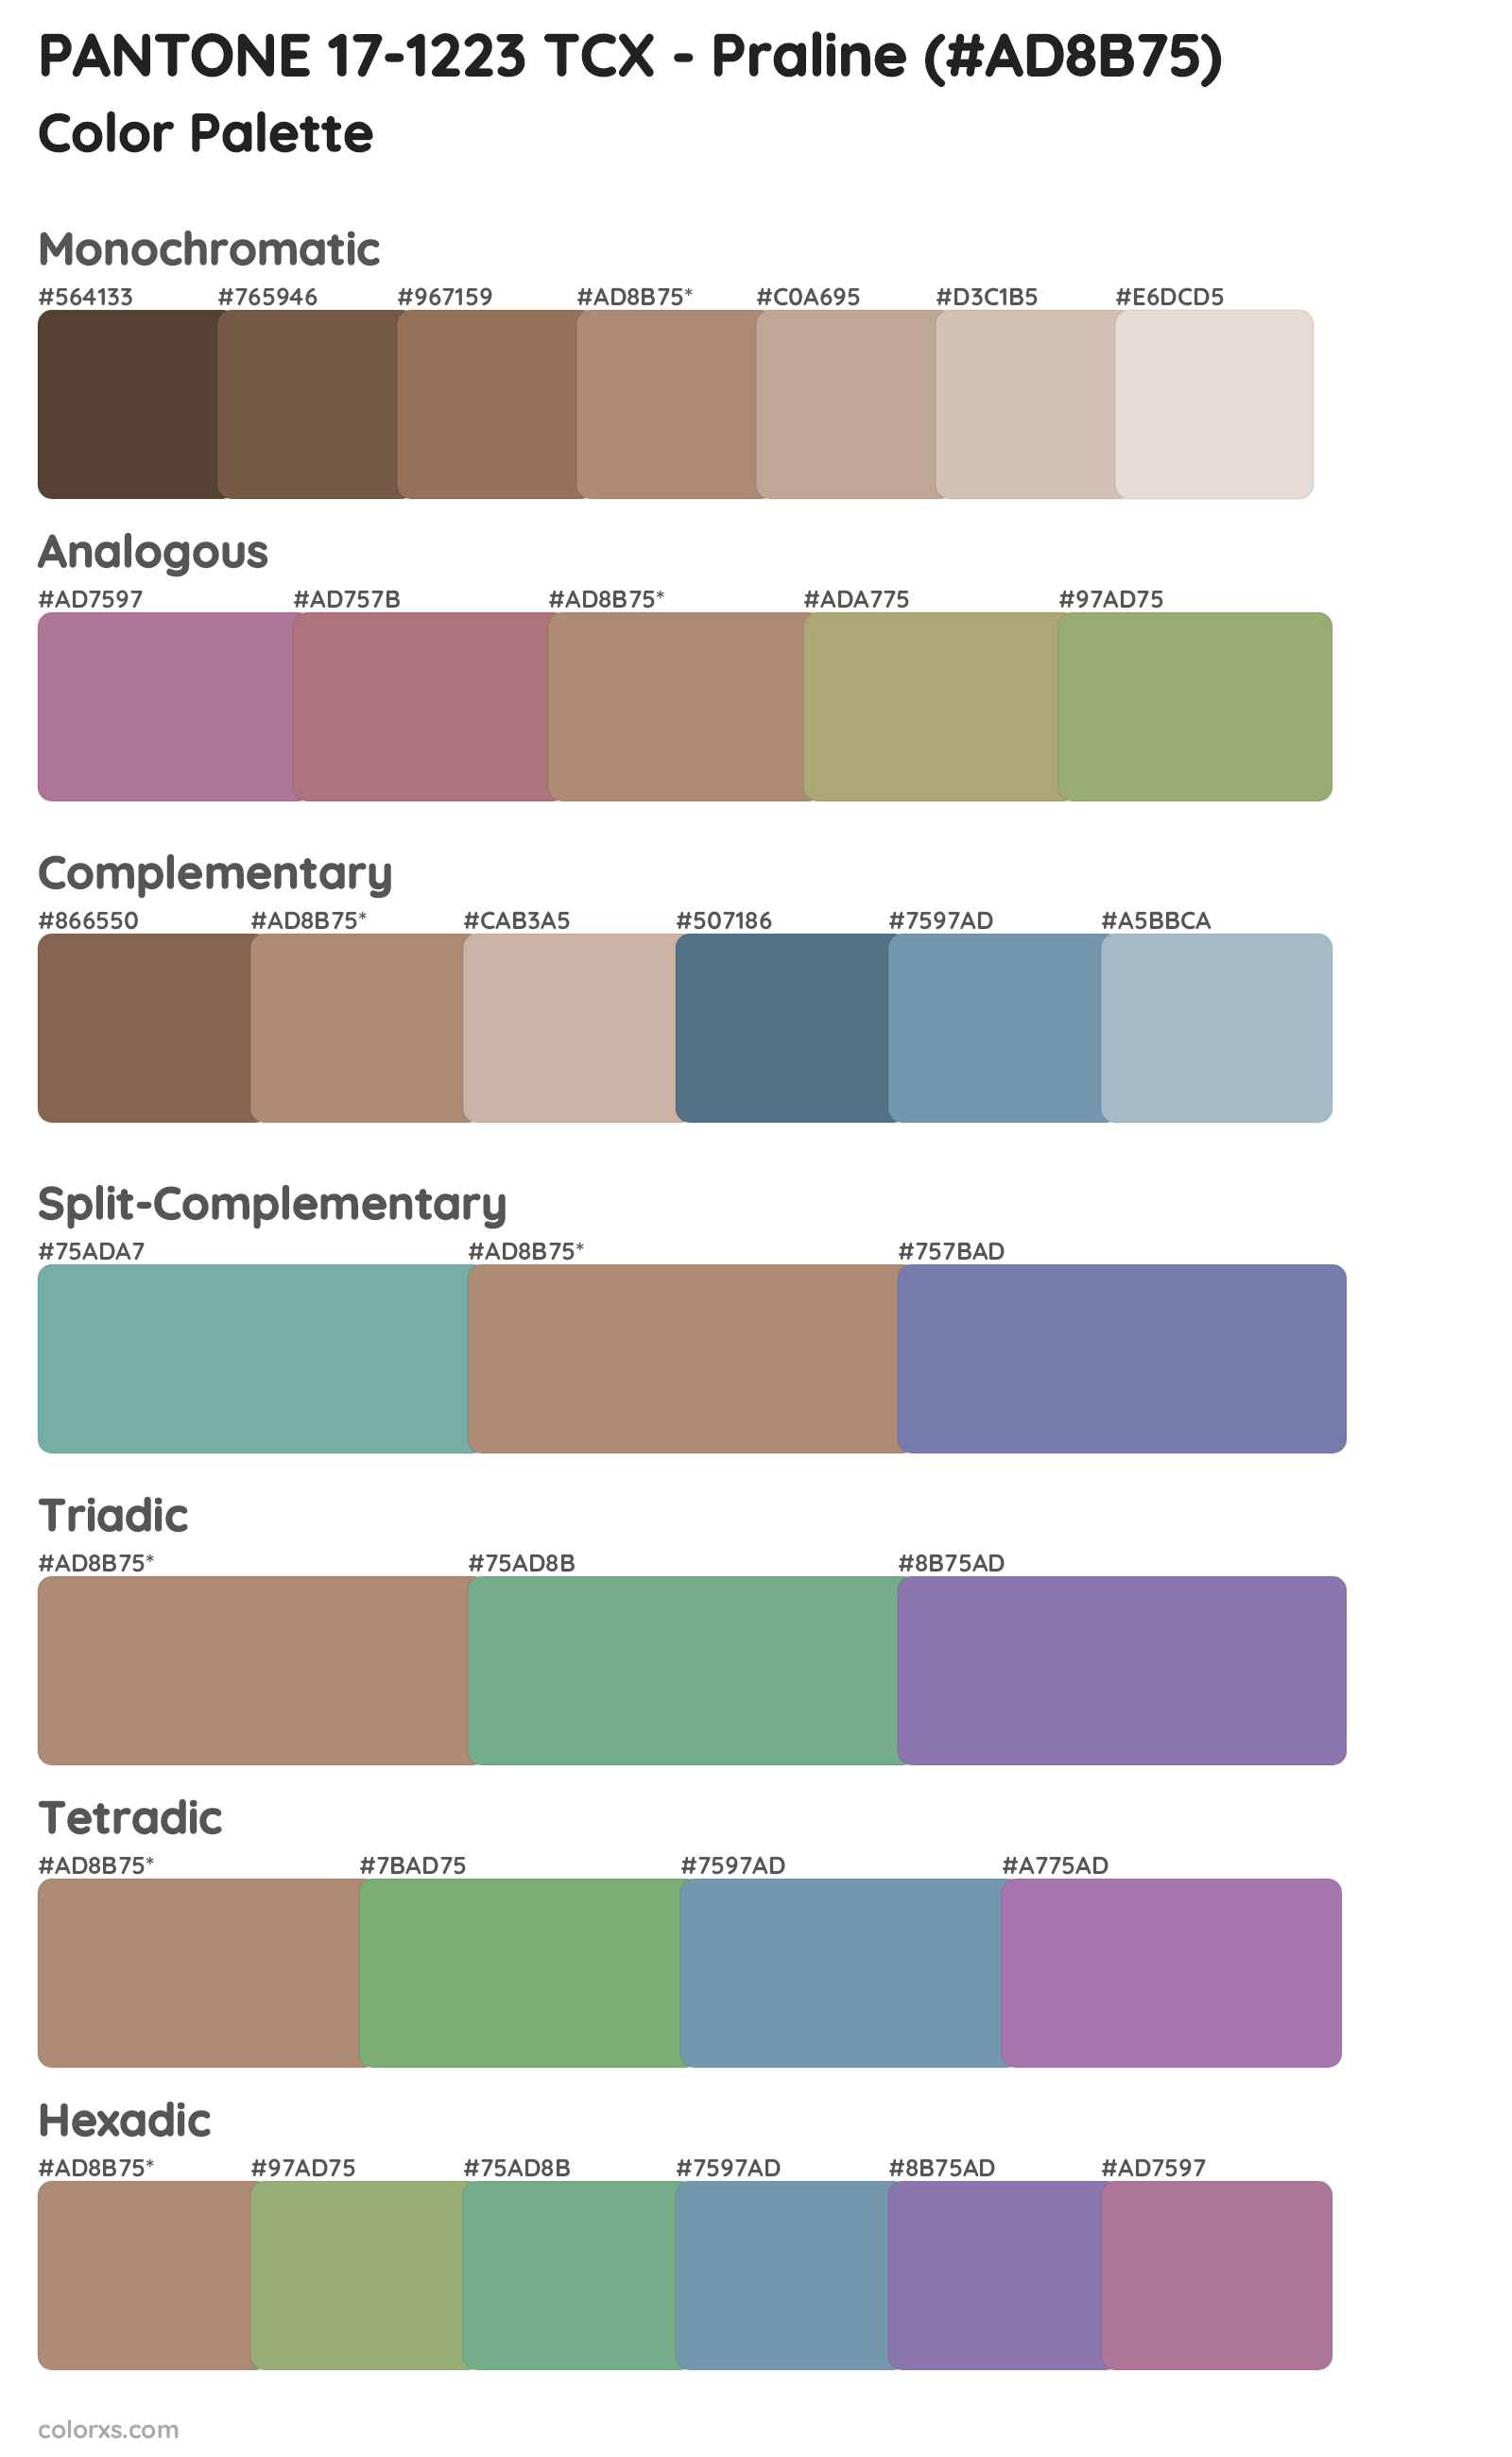 PANTONE 17-1223 TCX - Praline Color Scheme Palettes